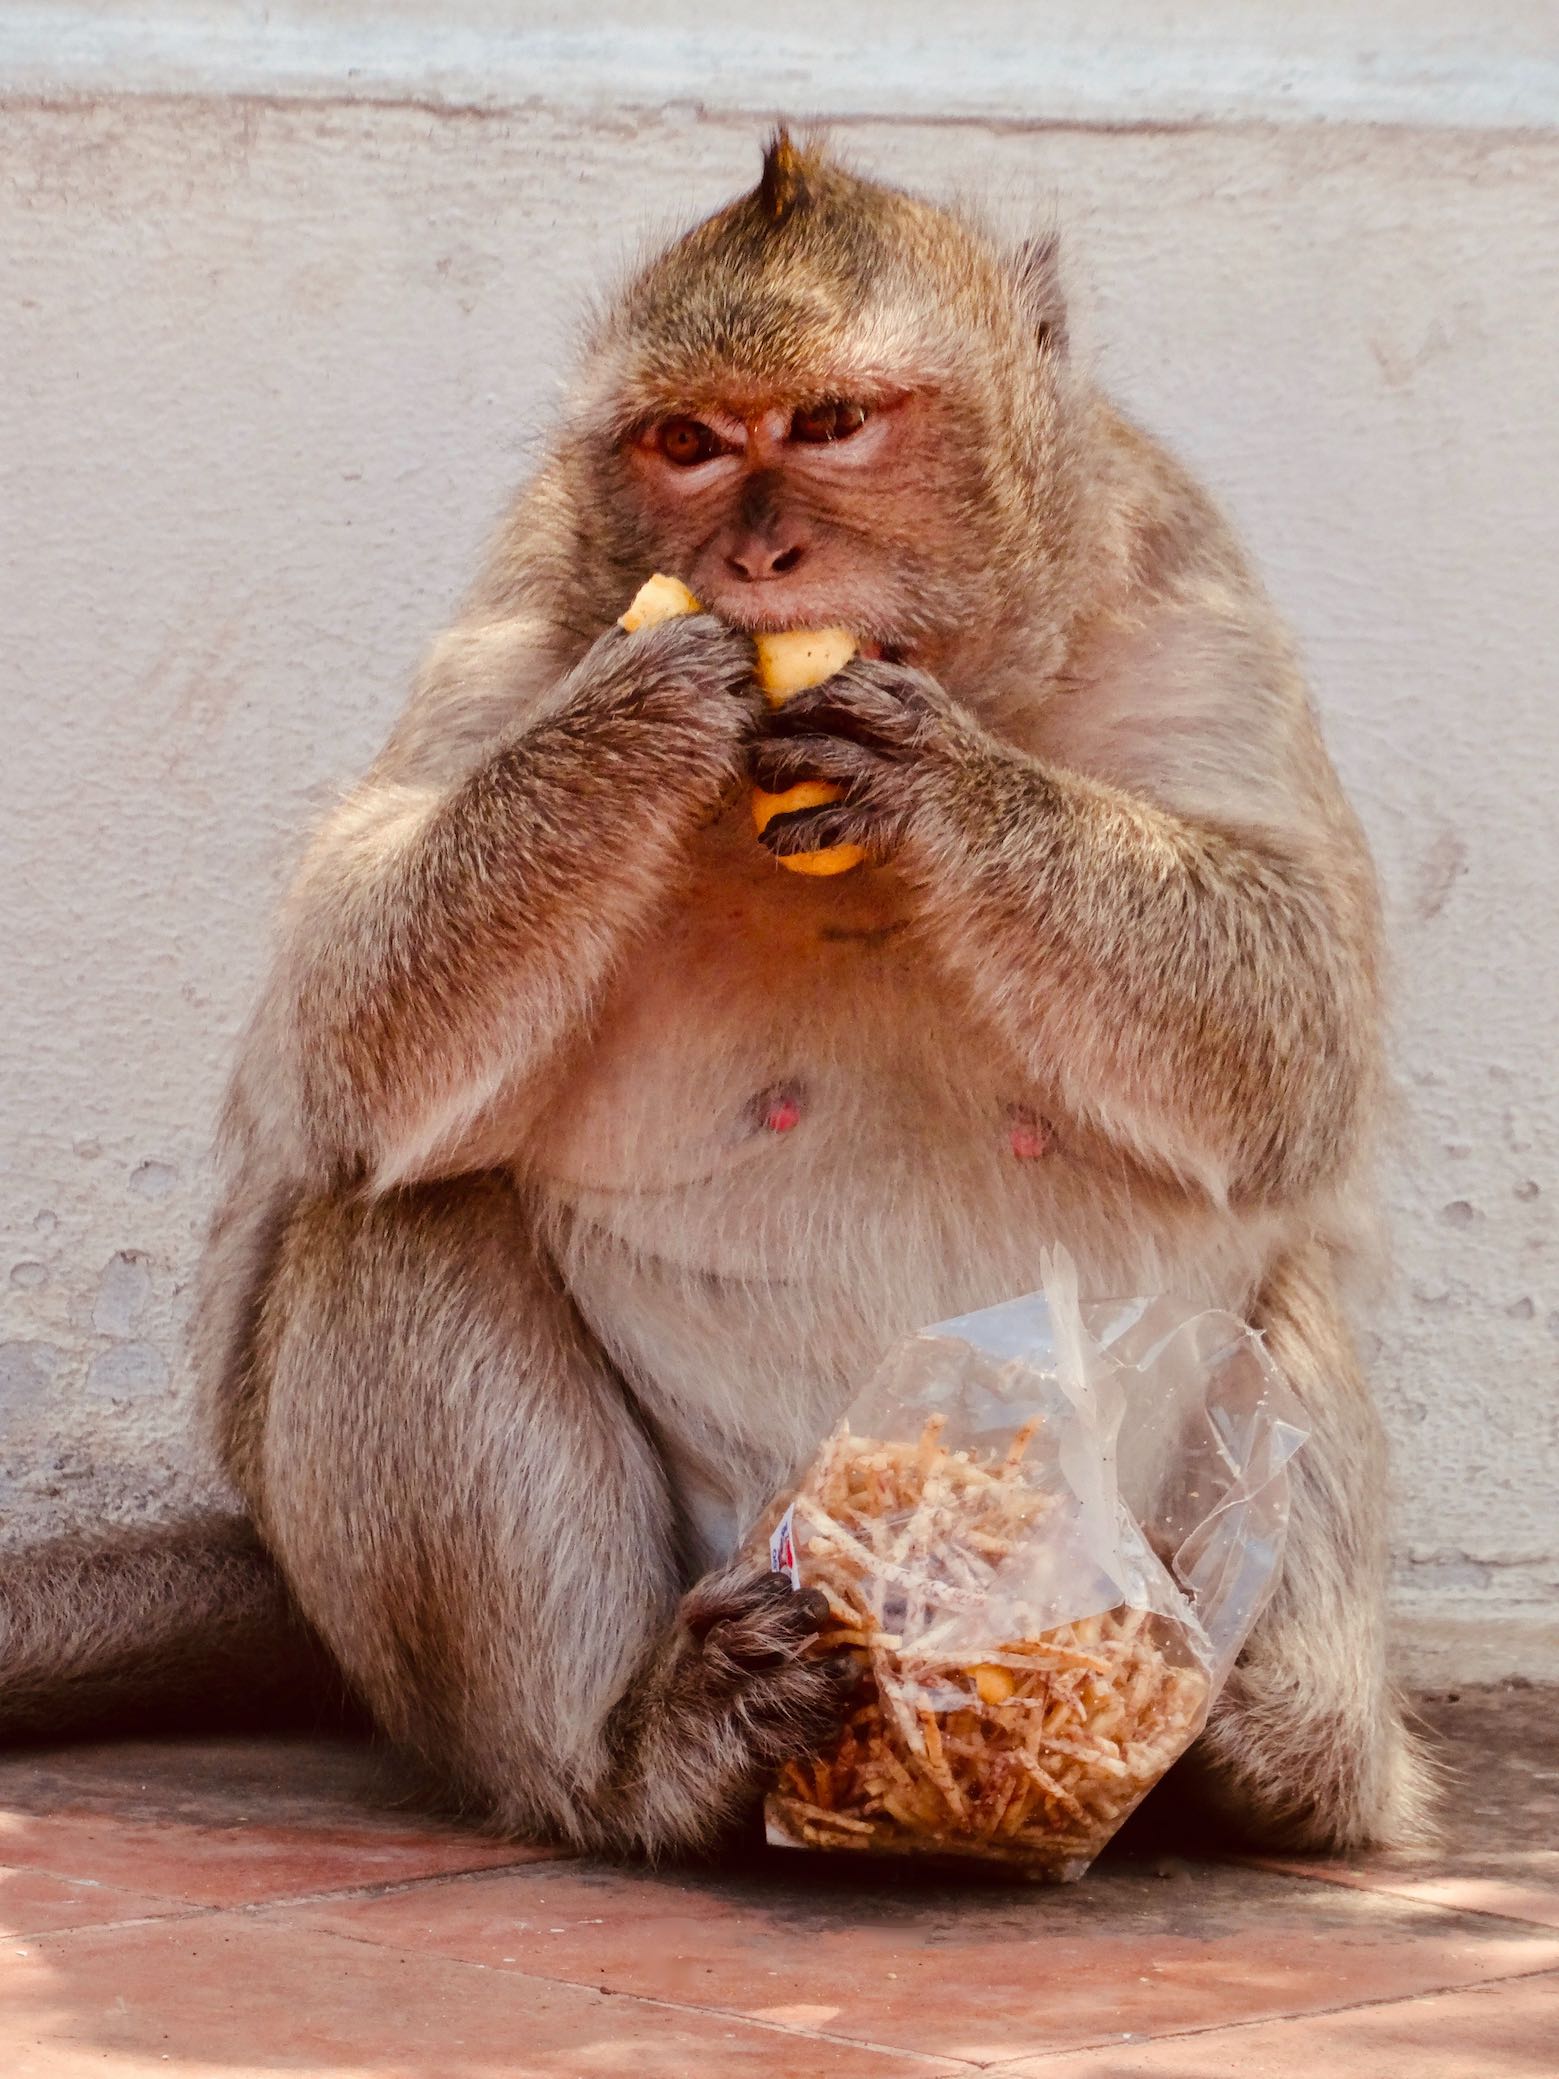 Hungry monkey Phetchaburi Thailand